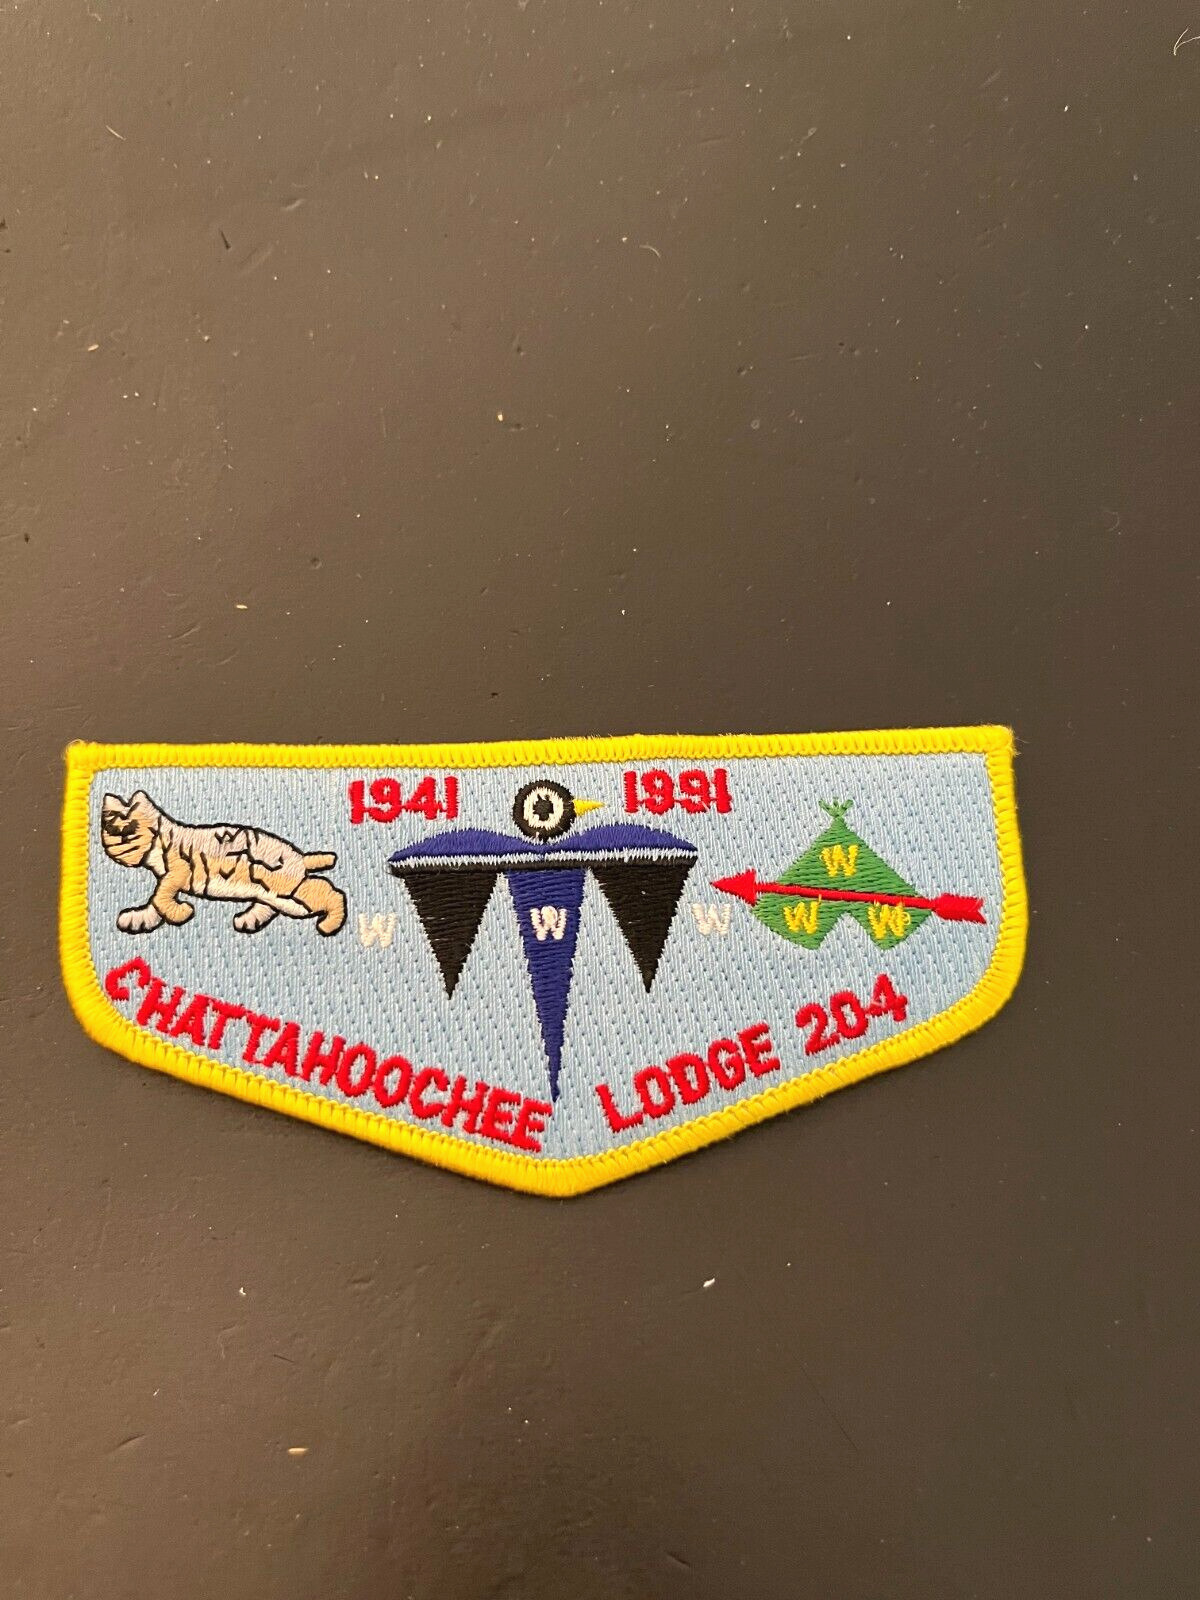 A CHATTAHOOCHEE LODGE 204 S47 1941-1991 50th ANN FLAP